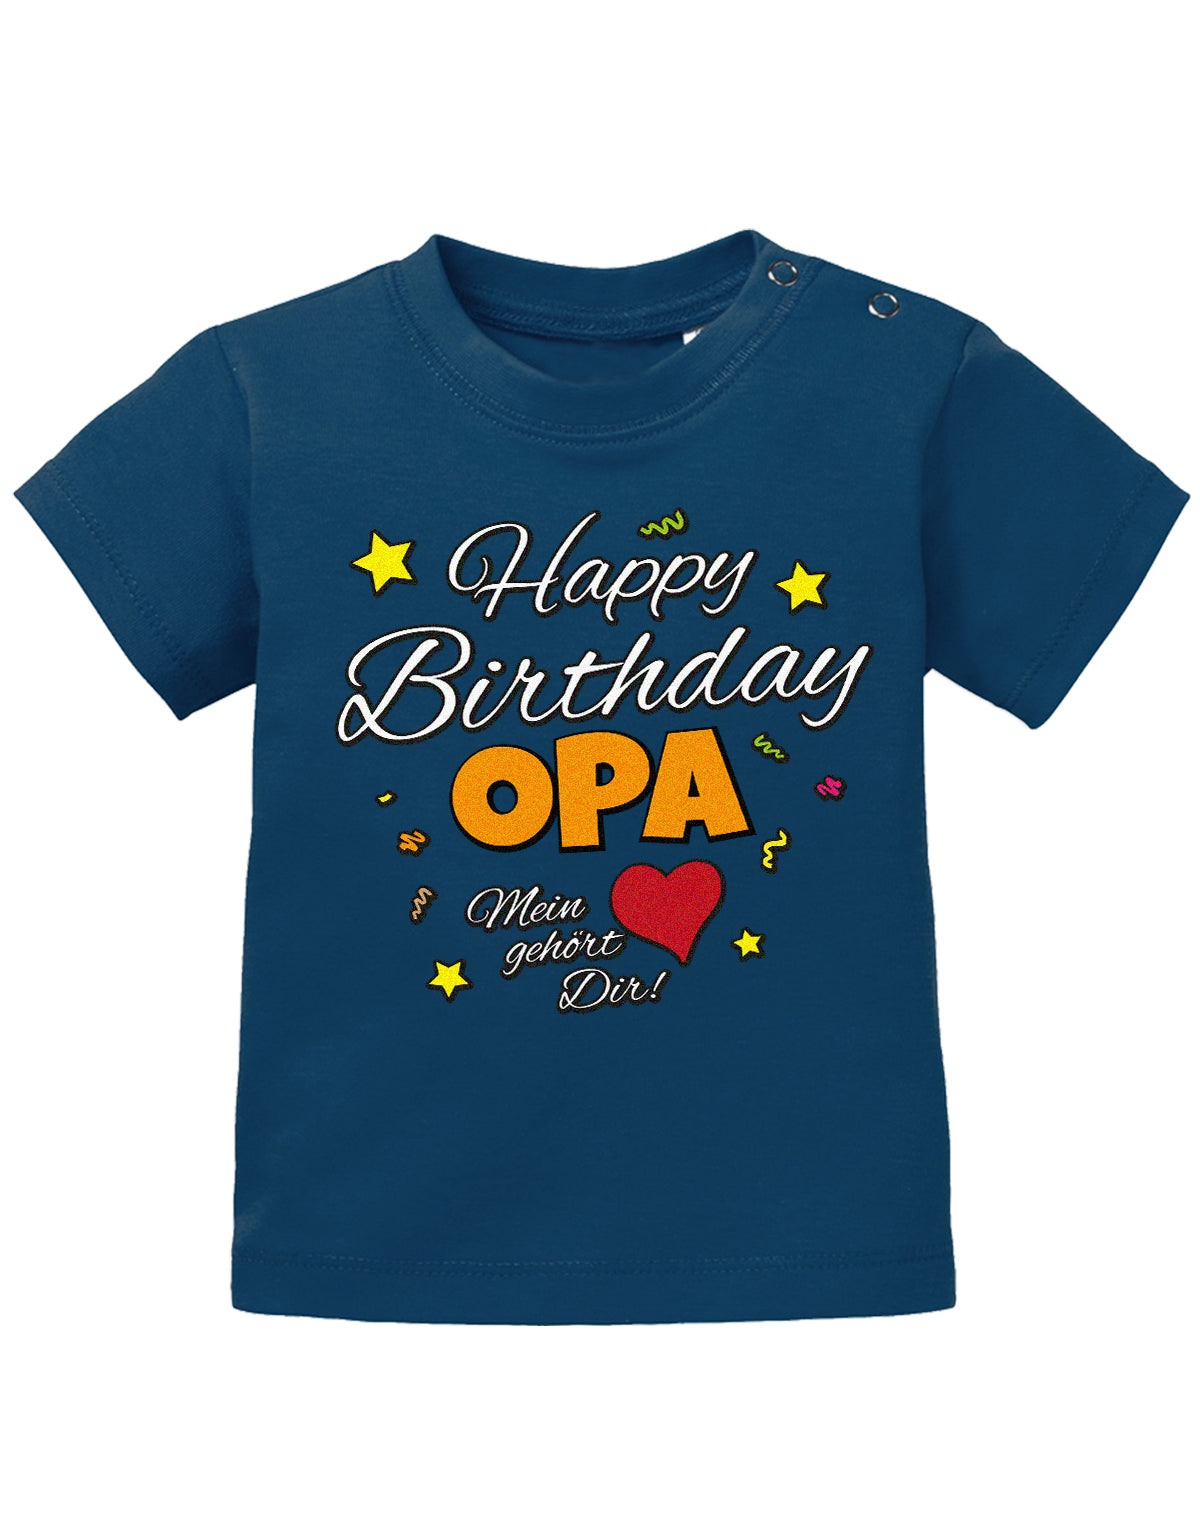 Opa Spruch Baby Shirt. Happy Birthday, Opa, mein Herz gehört Dir. Navy